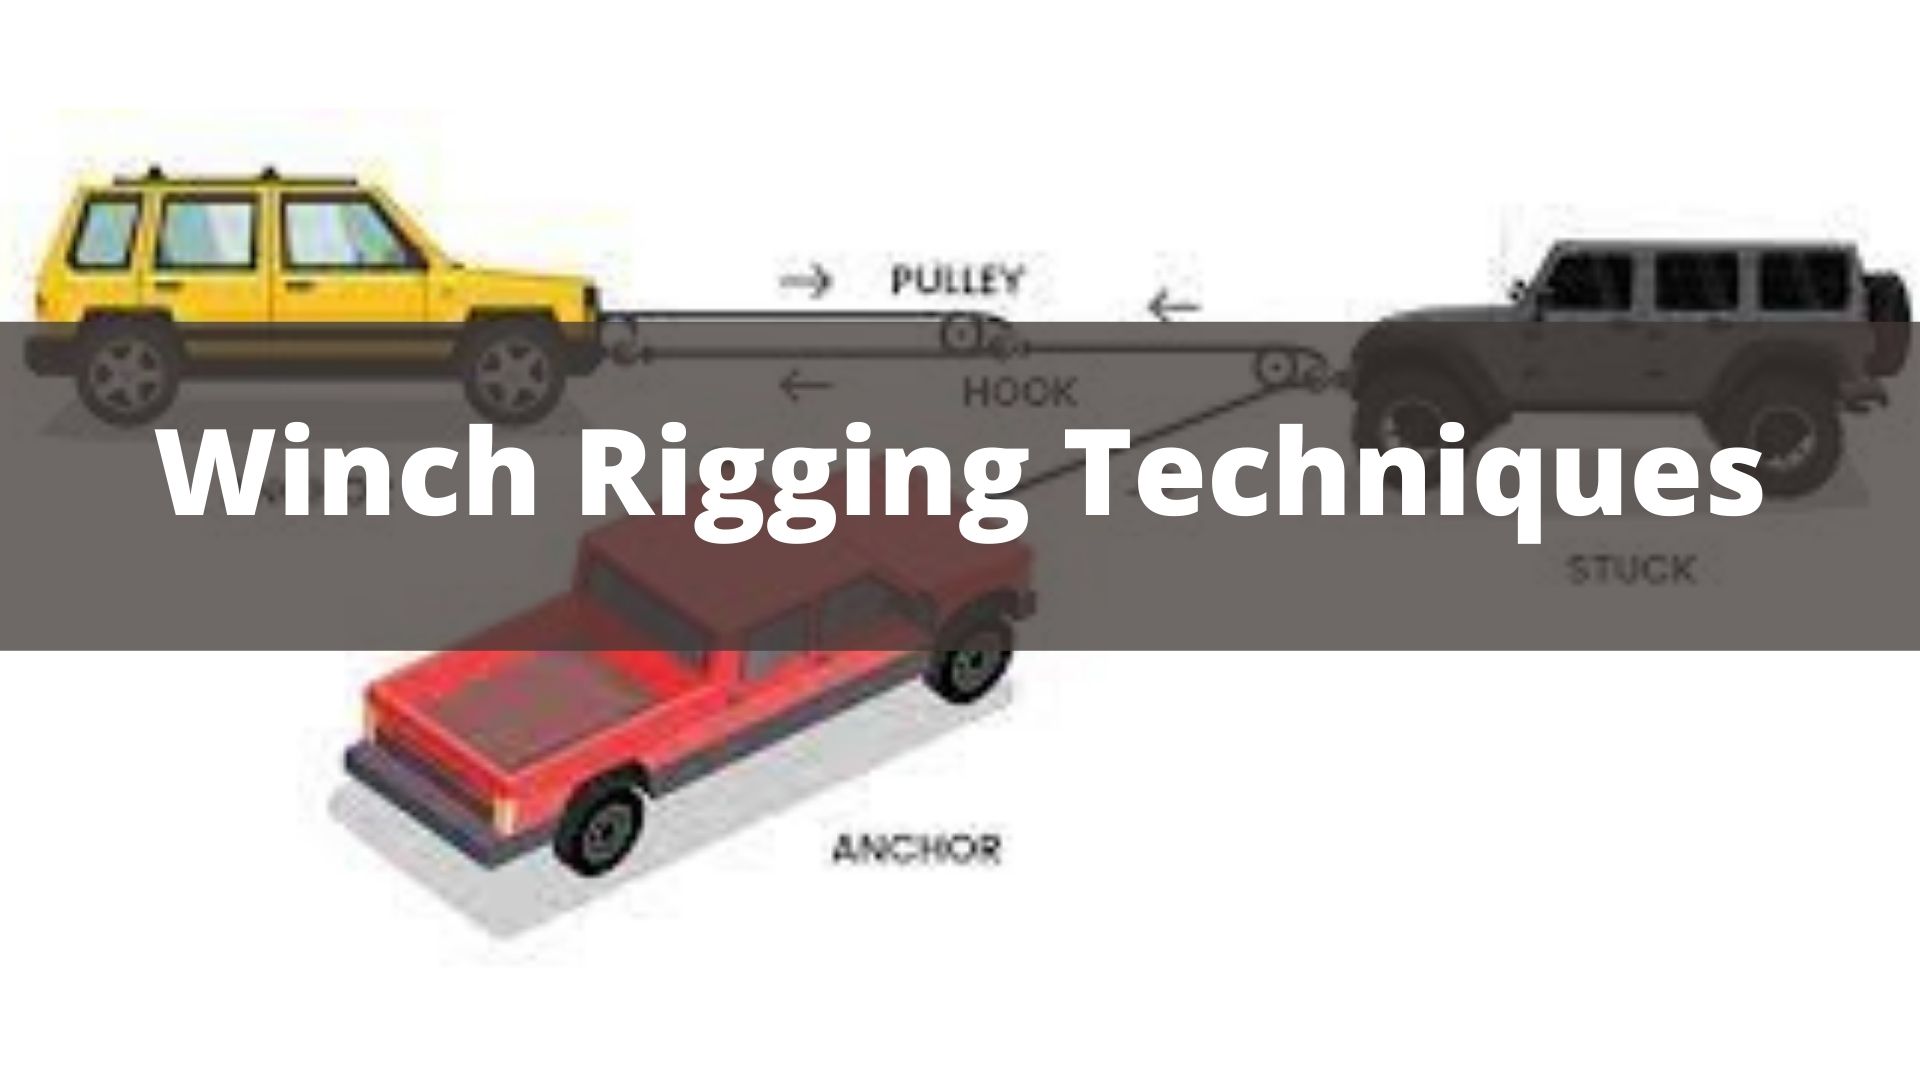 Winch Rigging Techniques